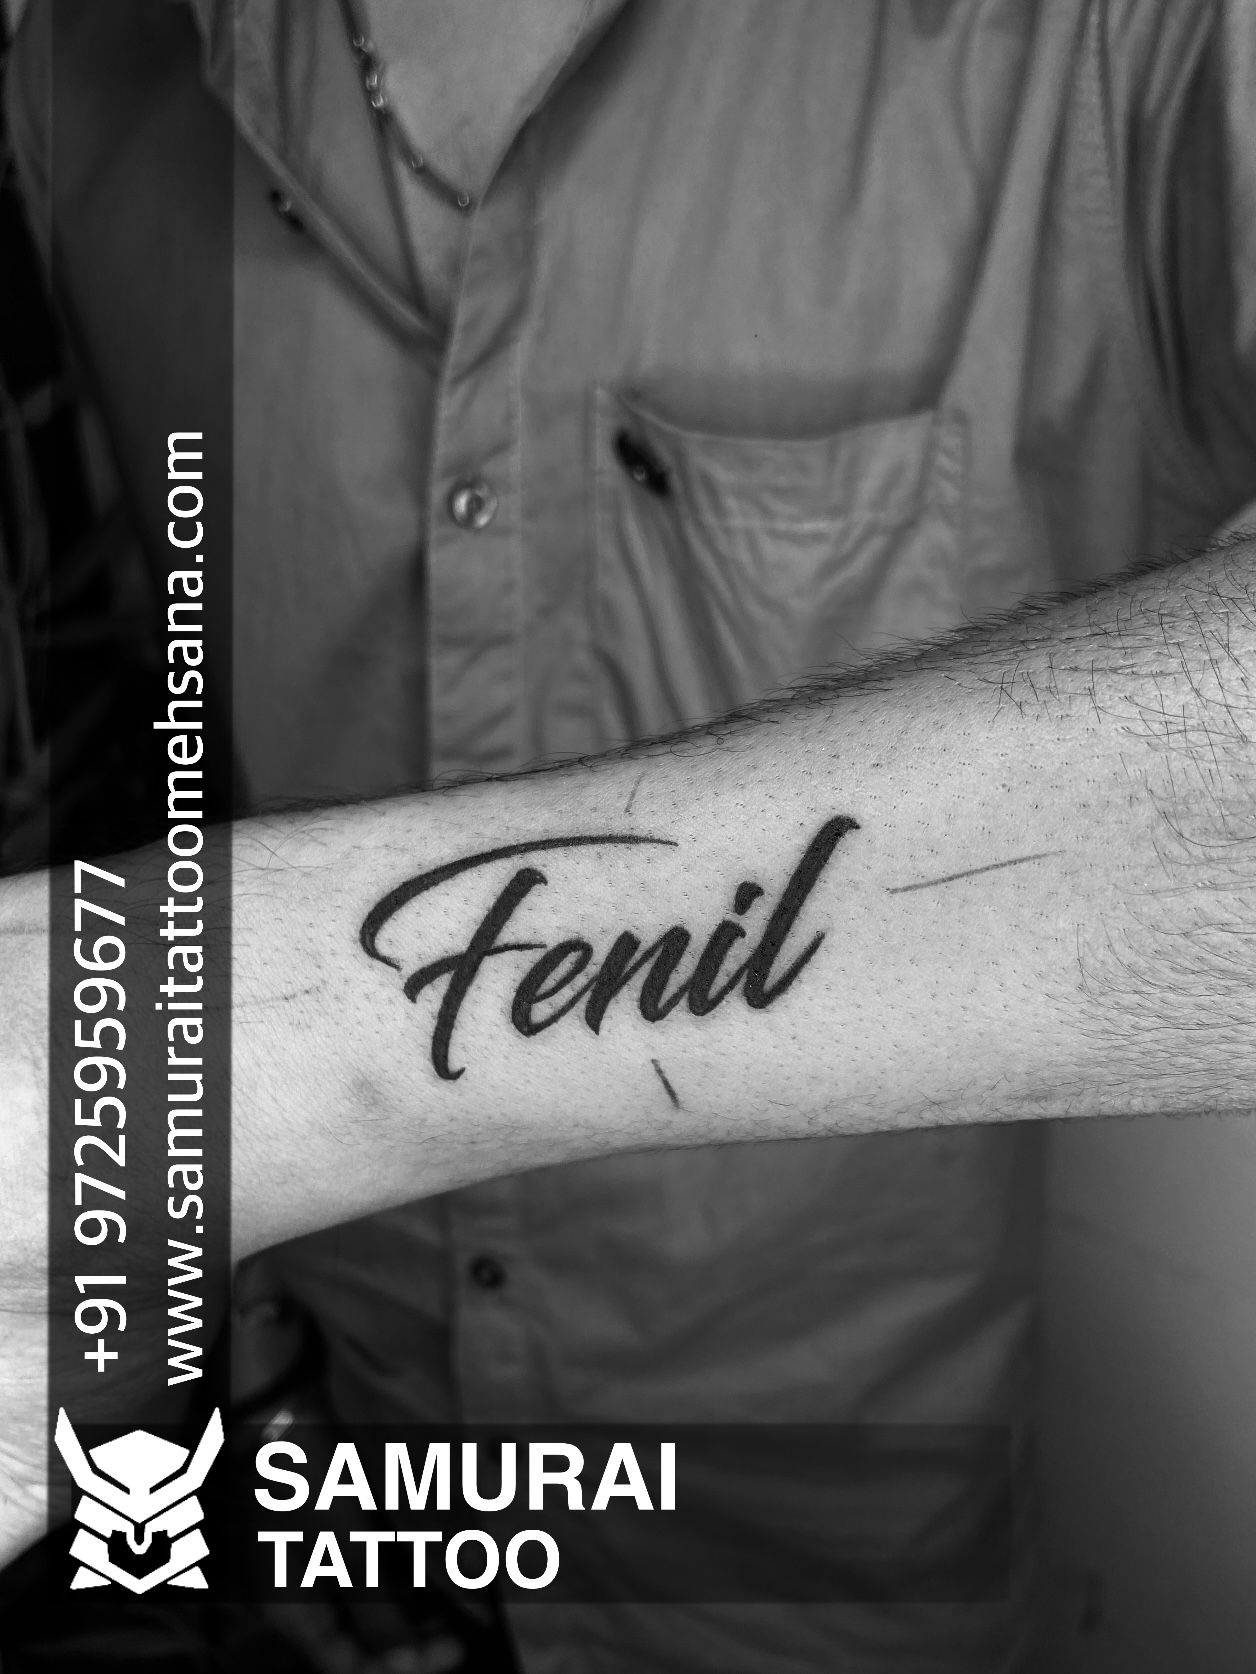 Tattoo uploaded by Vipul Chaudhary • Trishul tattoo |trishul tattoo design  |Mahadev Trishul tattoo |Trishul tattoo with om • Tattoodo